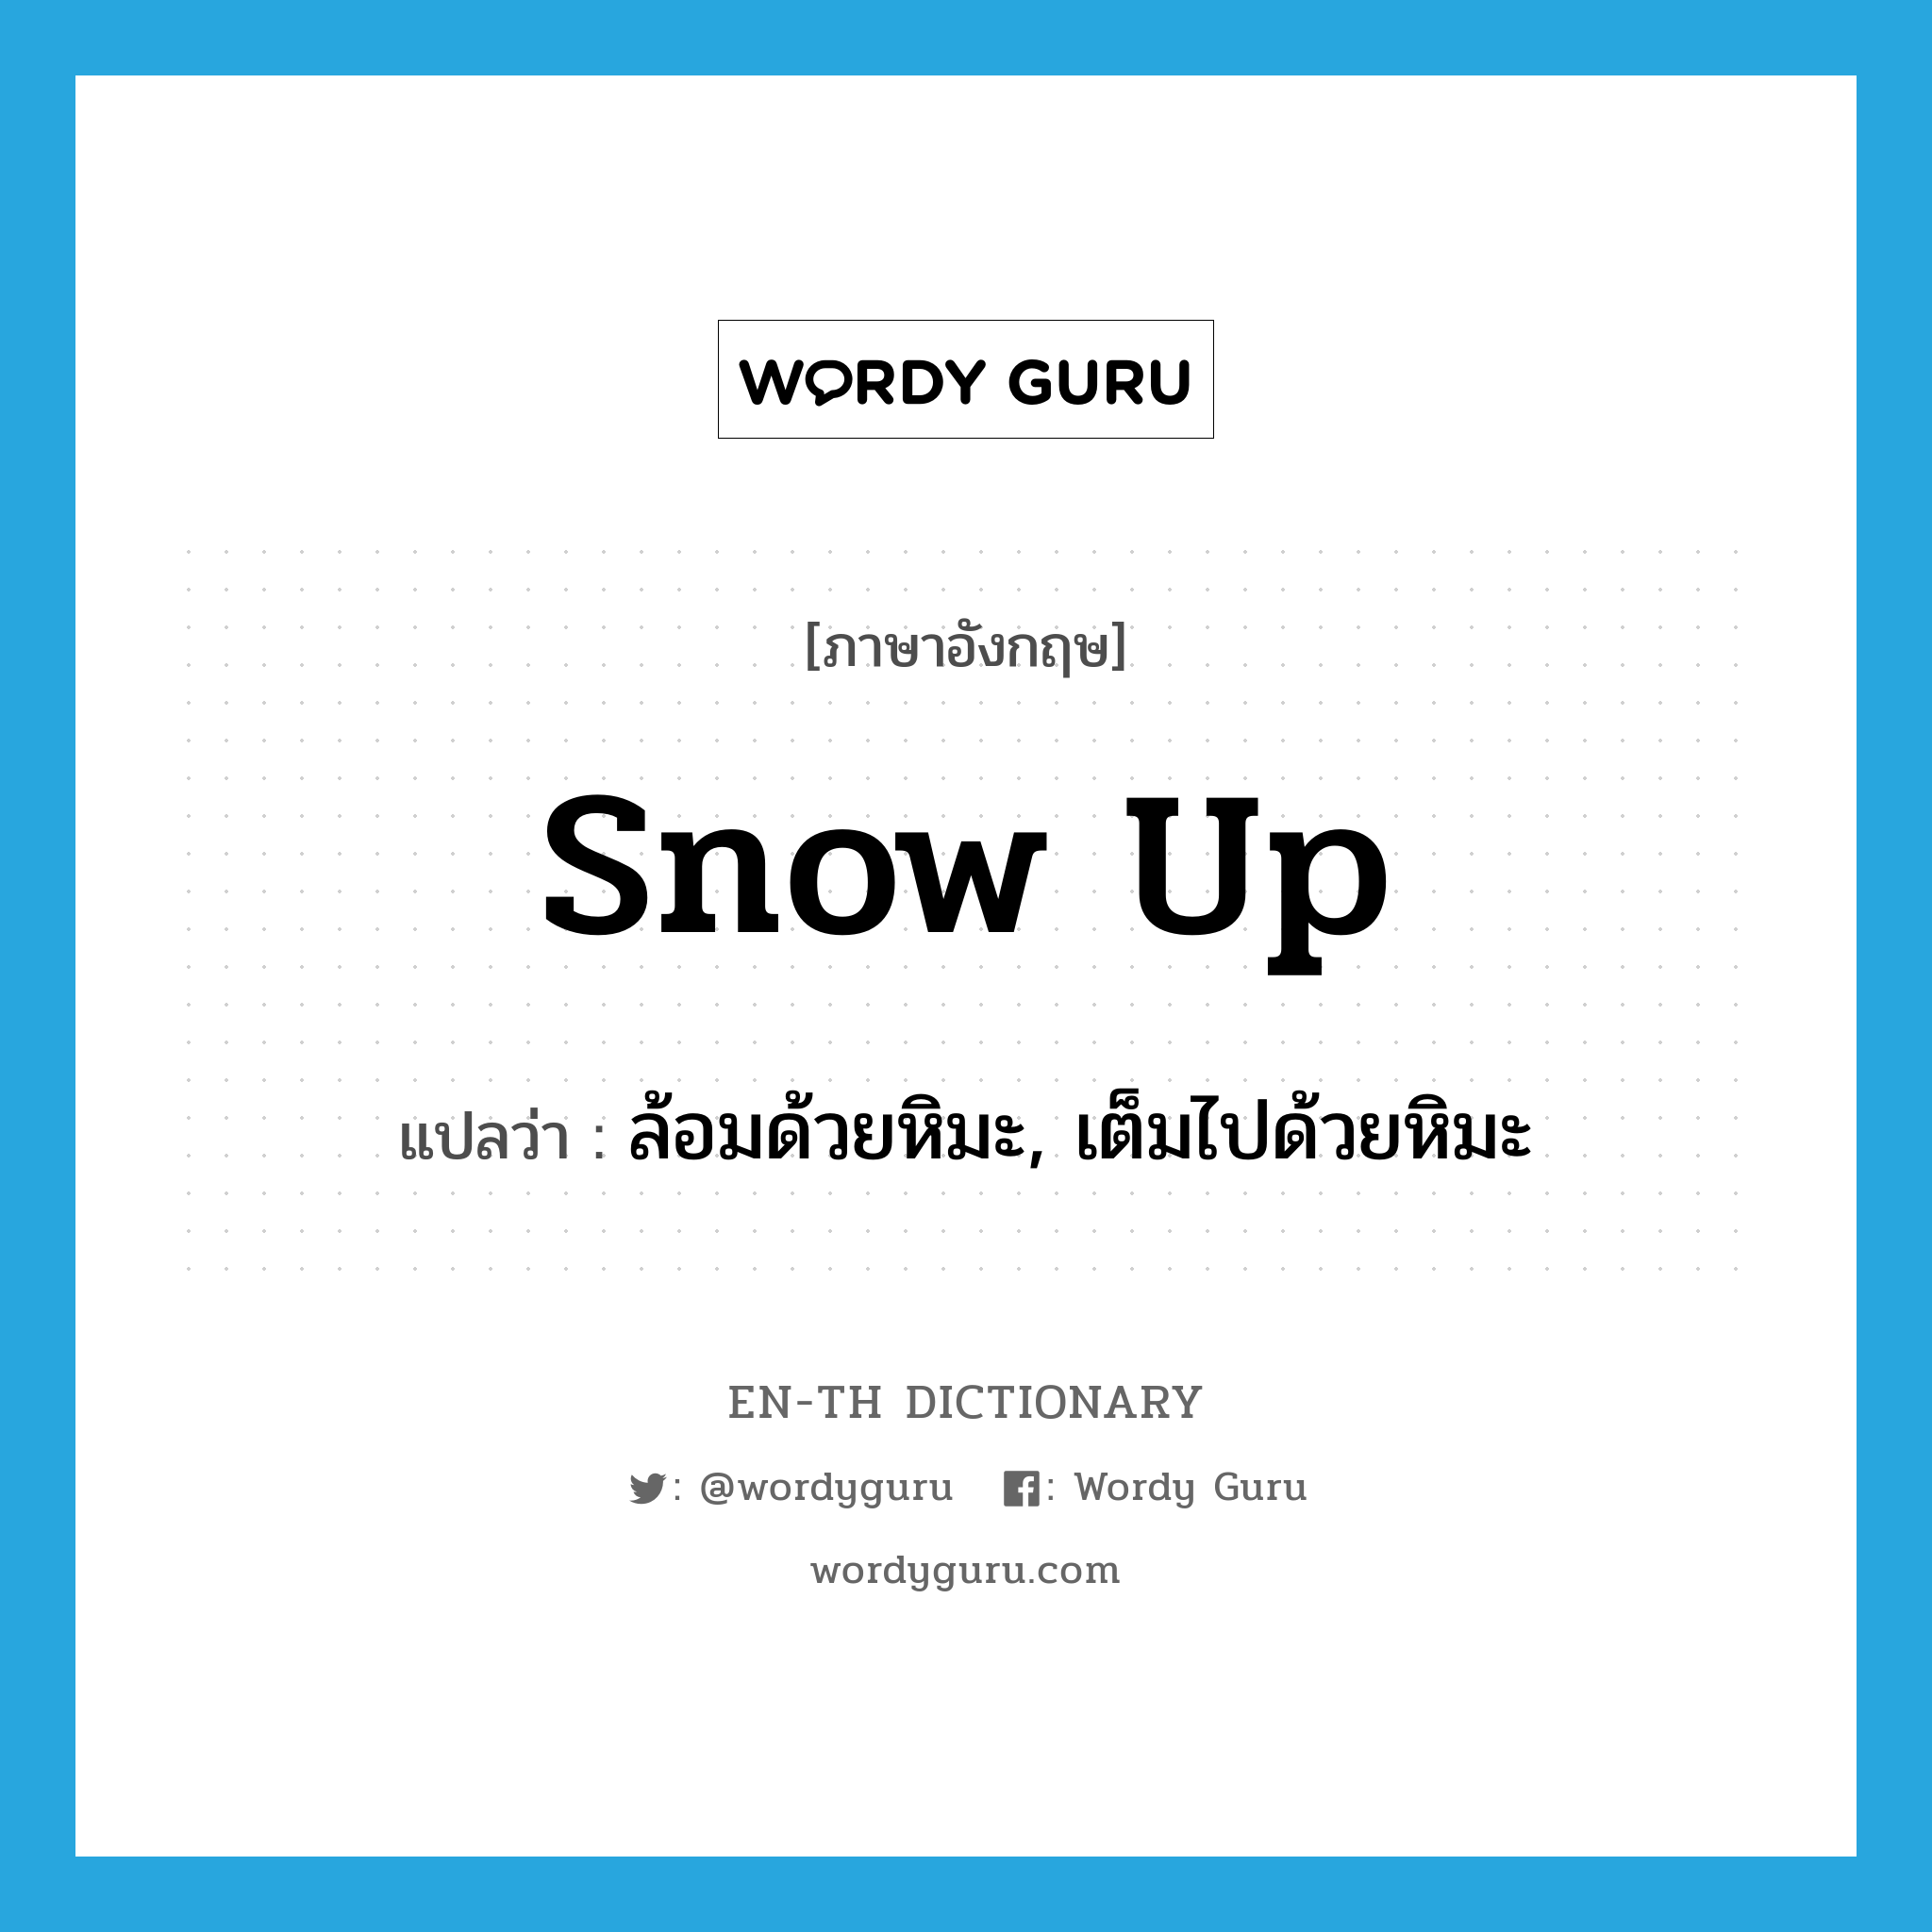 ล้อมด้วยหิมะ, เต็มไปด้วยหิมะ ภาษาอังกฤษ?, คำศัพท์ภาษาอังกฤษ ล้อมด้วยหิมะ, เต็มไปด้วยหิมะ แปลว่า snow up ประเภท PHRV หมวด PHRV